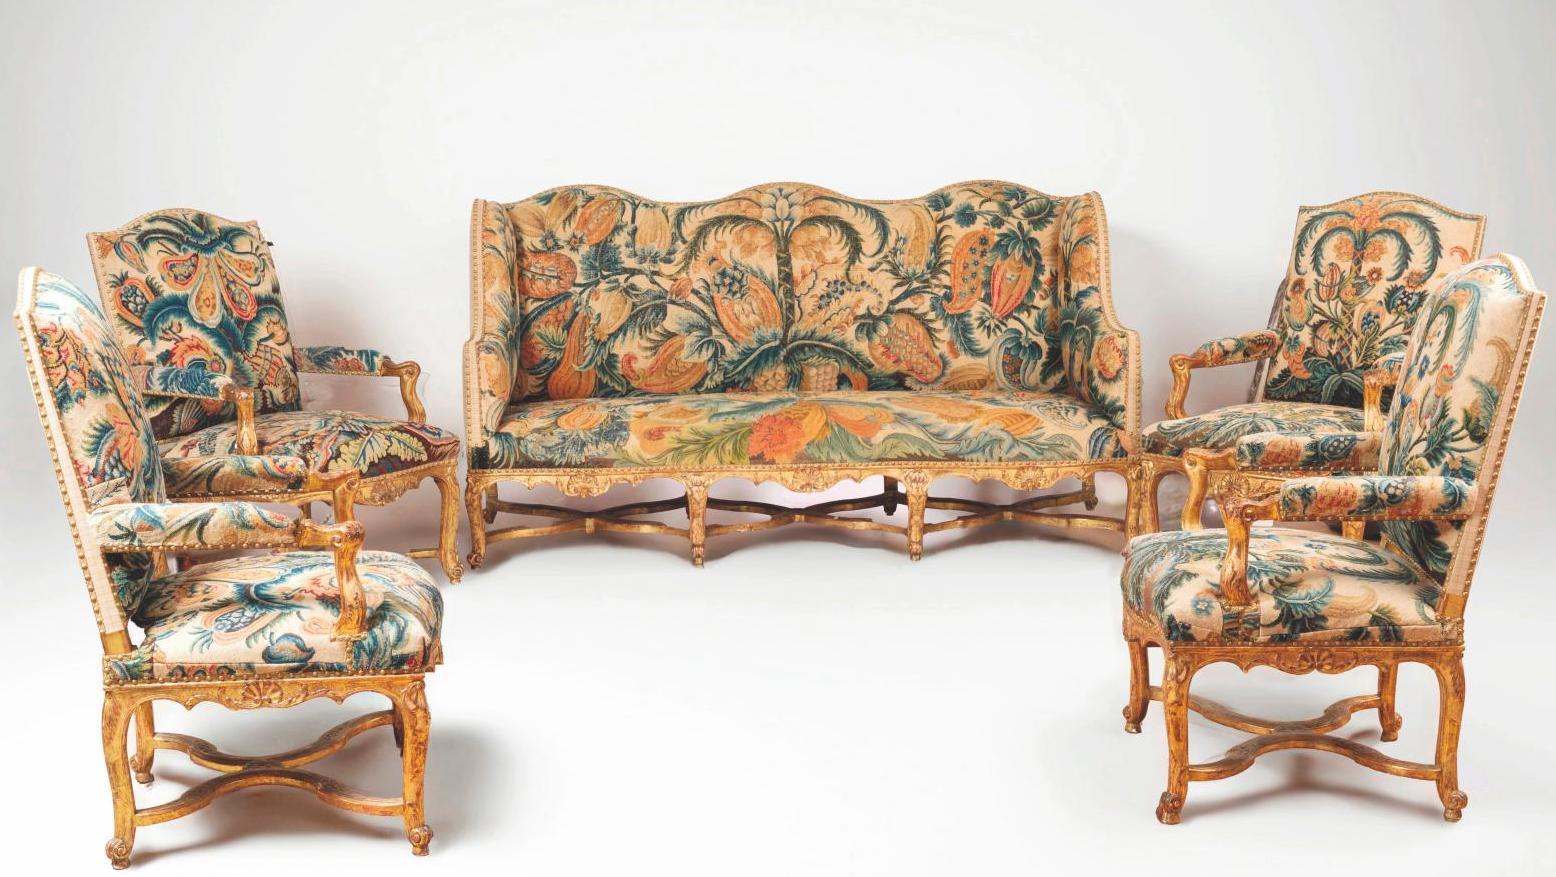 Époque Régence. Mobilier de salon composé de quatre fauteuils à la reine et d’un... Des mobiliers de châteaux du XVIIIe fort appréciés